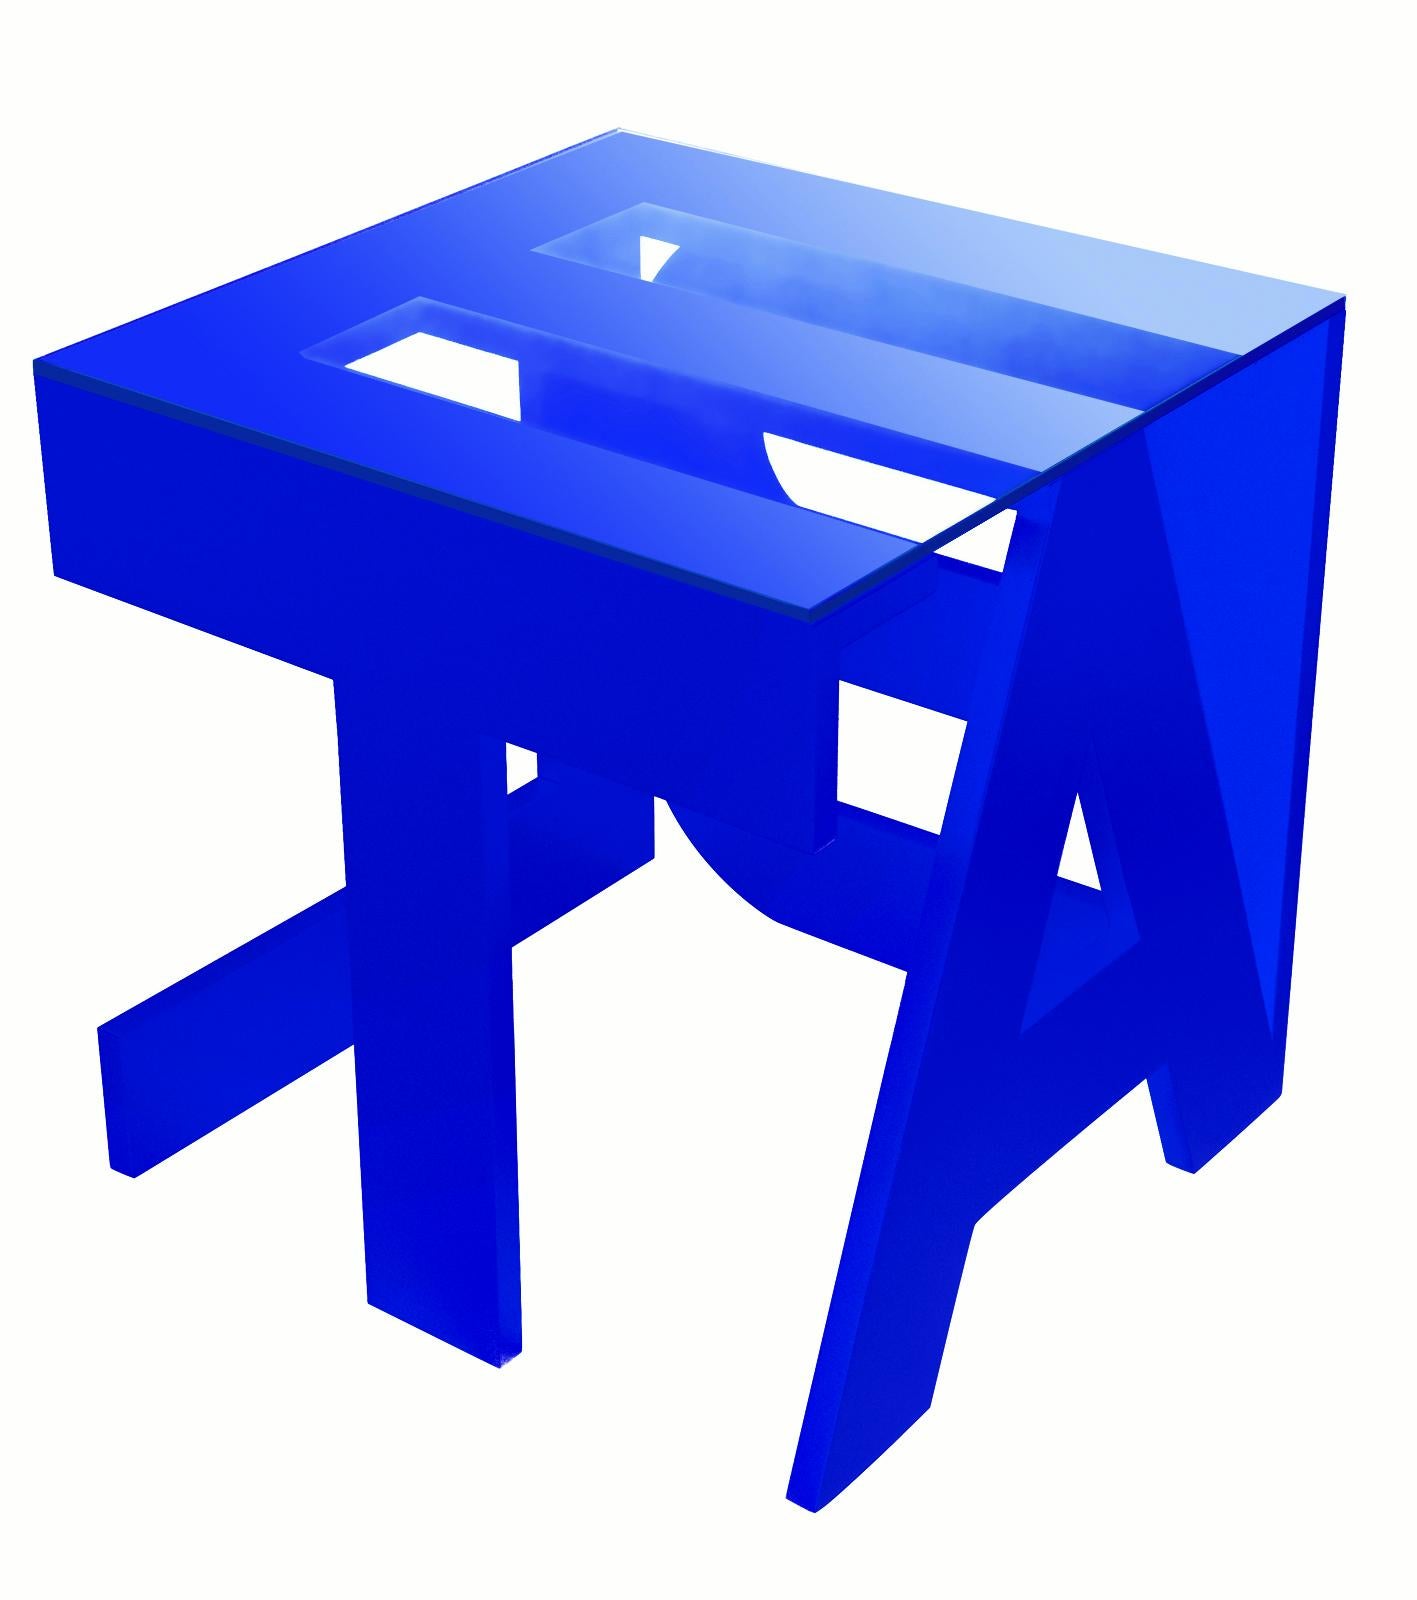 Table Table de Roberta Rampazzo
Production actuelle
Dimensions : L 50 x D 50 x H 52 cm
Matériaux : MDF 20mm, Verre.

Avec les lettres du mot 